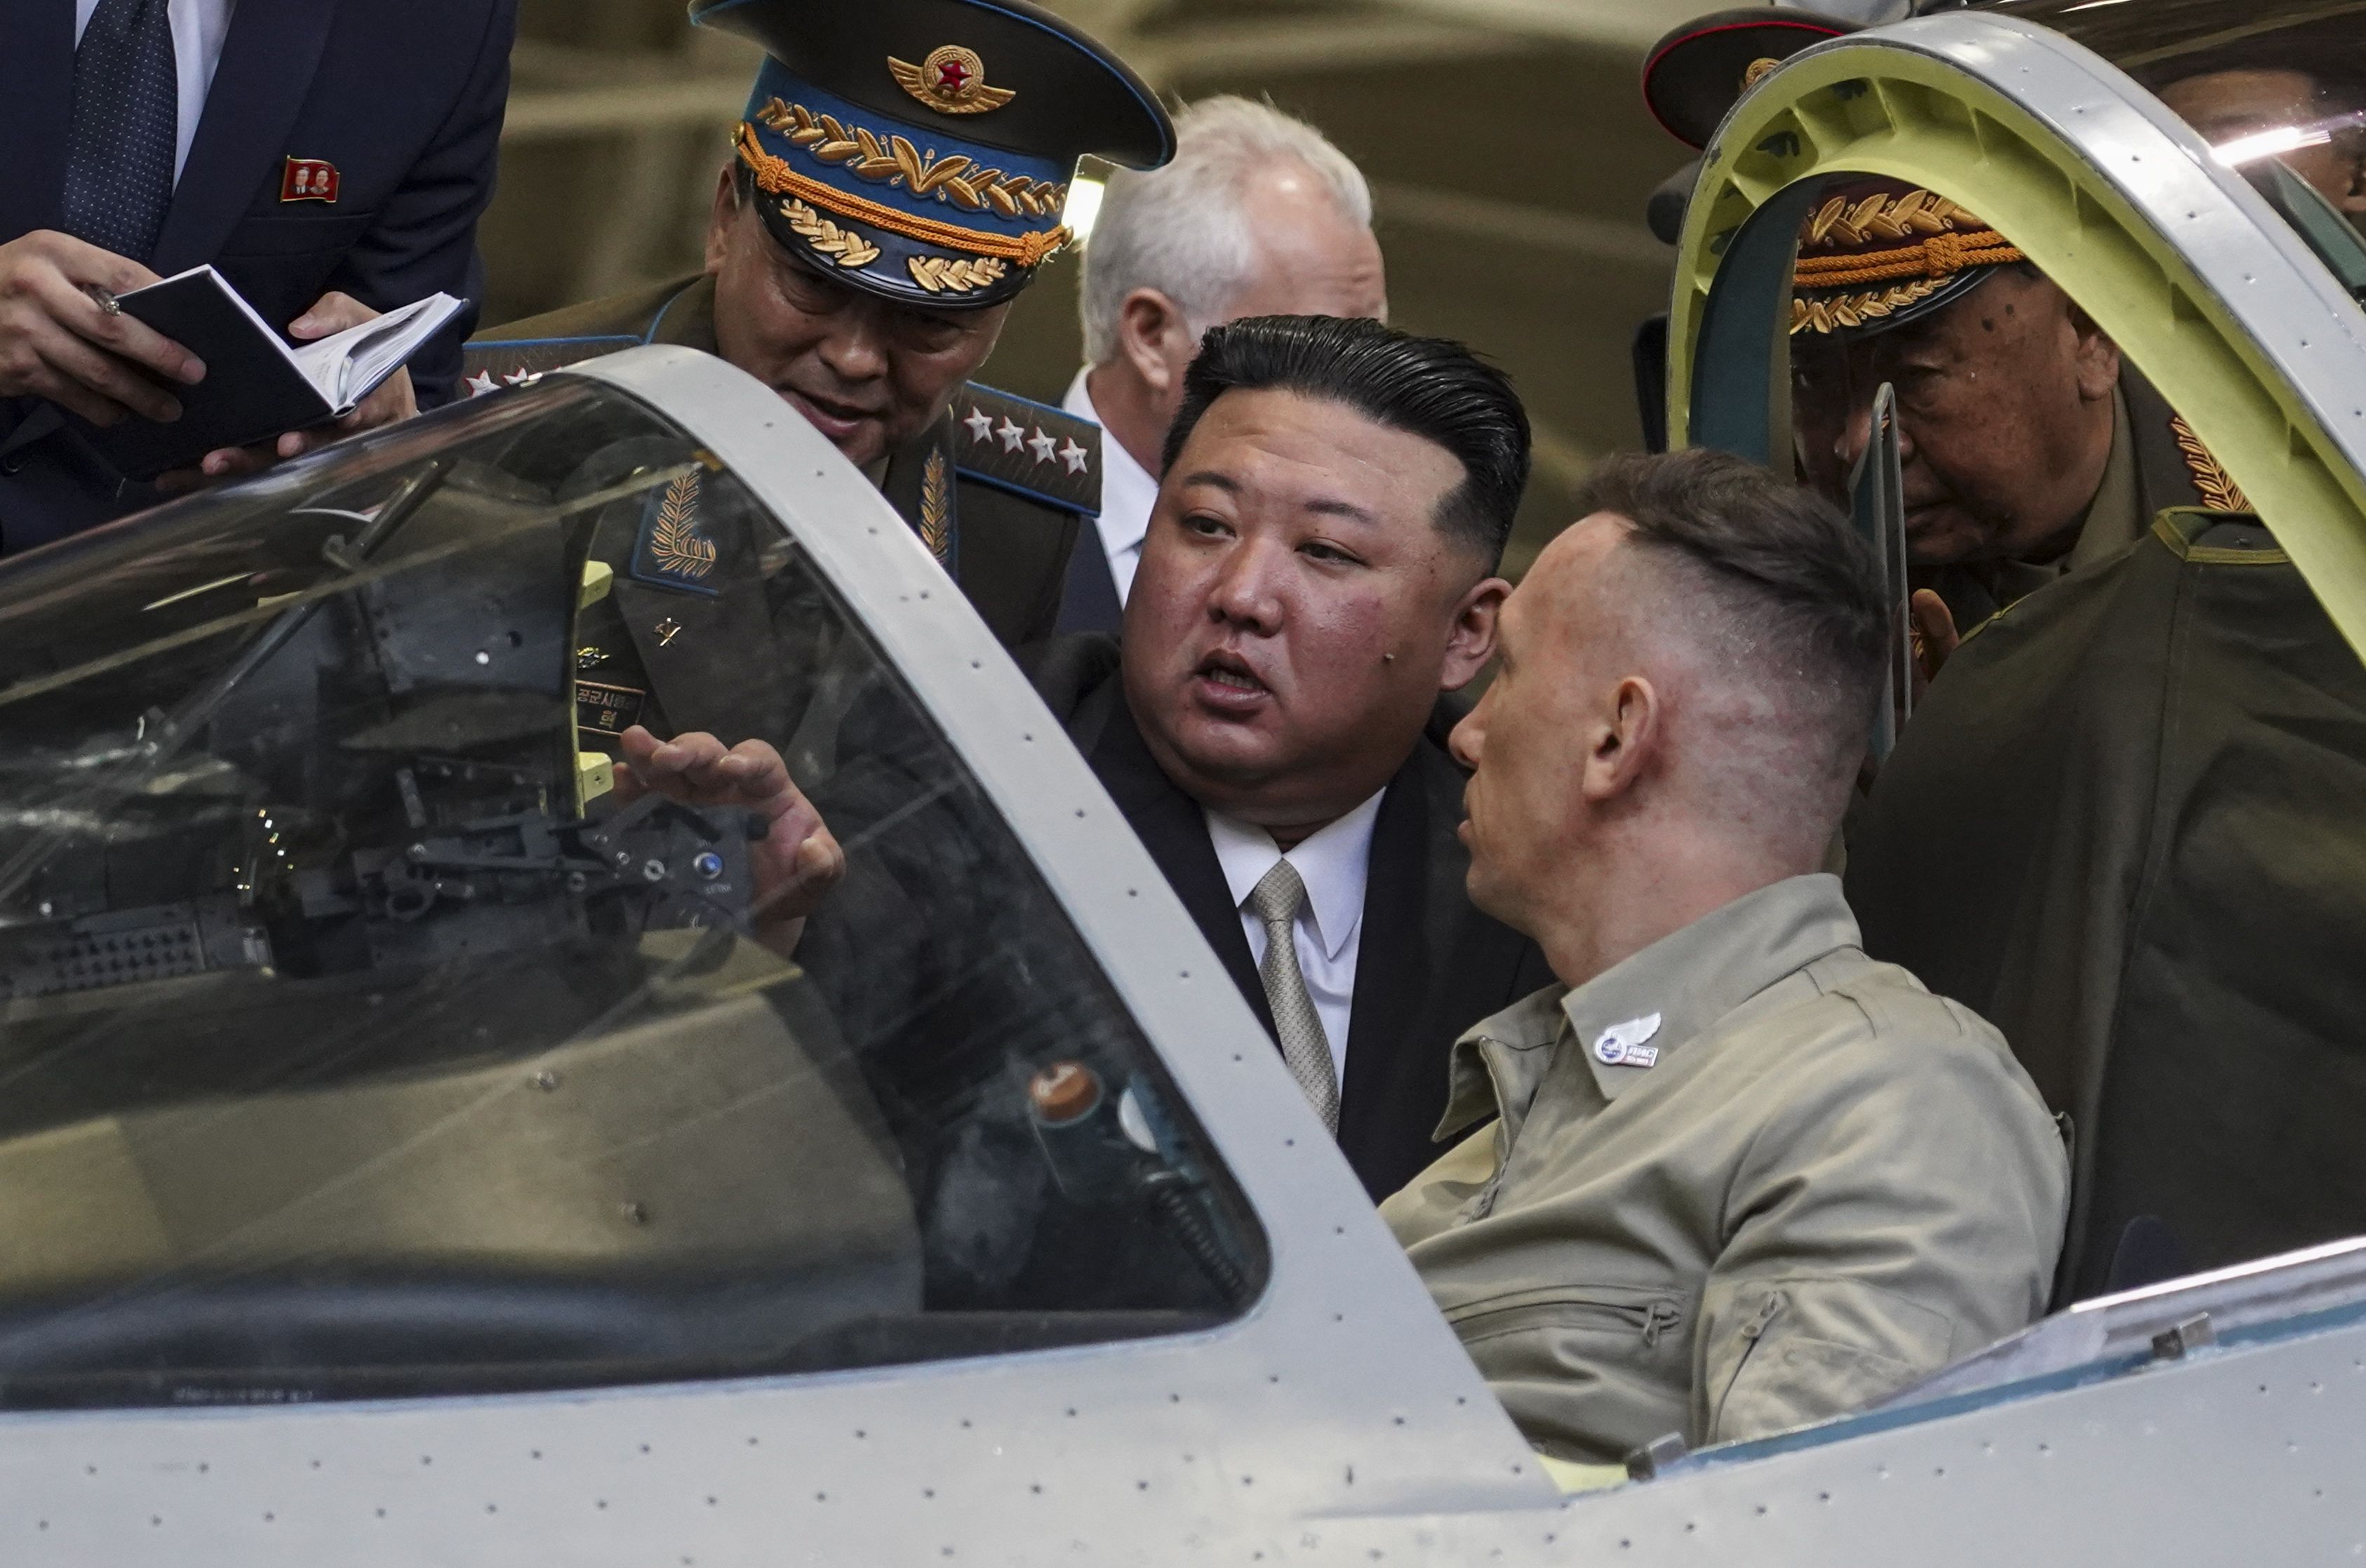 Una fotografía proporcionada por el servicio de prensa del Gobierno de la región de Khabarovsk muestra al líder norcoreano Kim Jong Un (centro) visitando una planta de aviones rusa que fabrica aviones de combate en Komsomolsk-on-Amur, a unos 6.300 kilómetros al este de Moscú, Rusia. EFE/EPA/GOVERNMENT OF KHABAROVSK